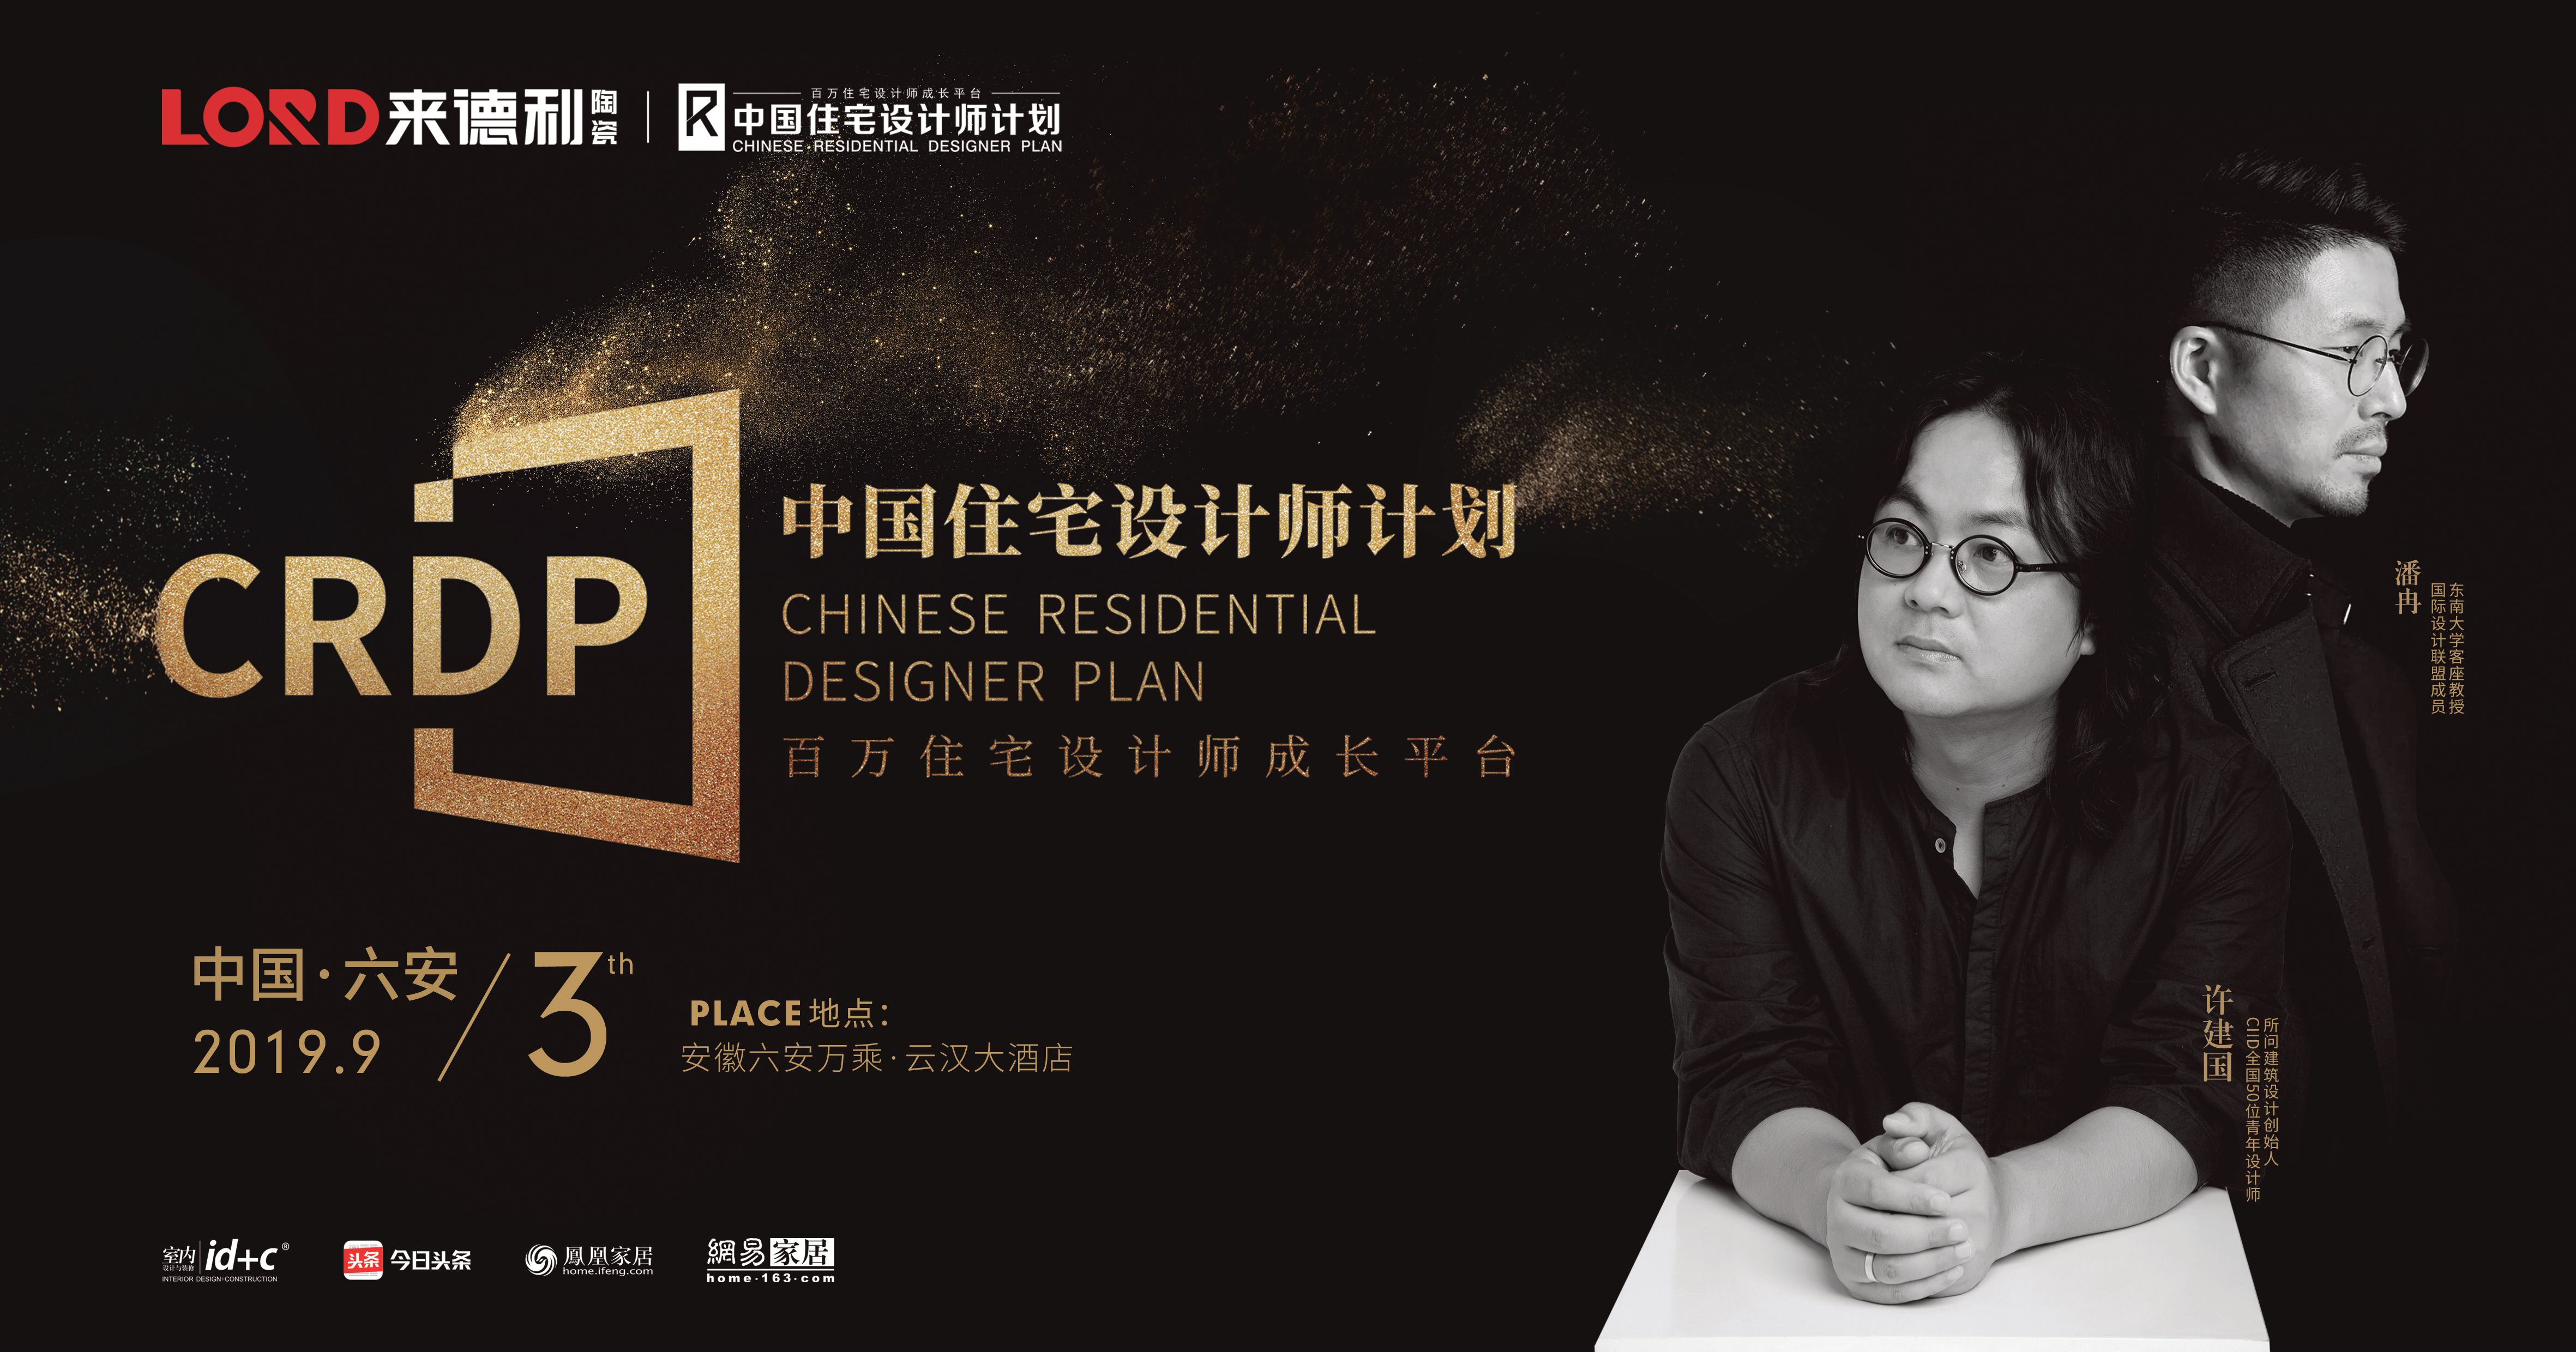 下一篇：来德利陶瓷联合id+c启动中国住宅设计师计划（六安站）